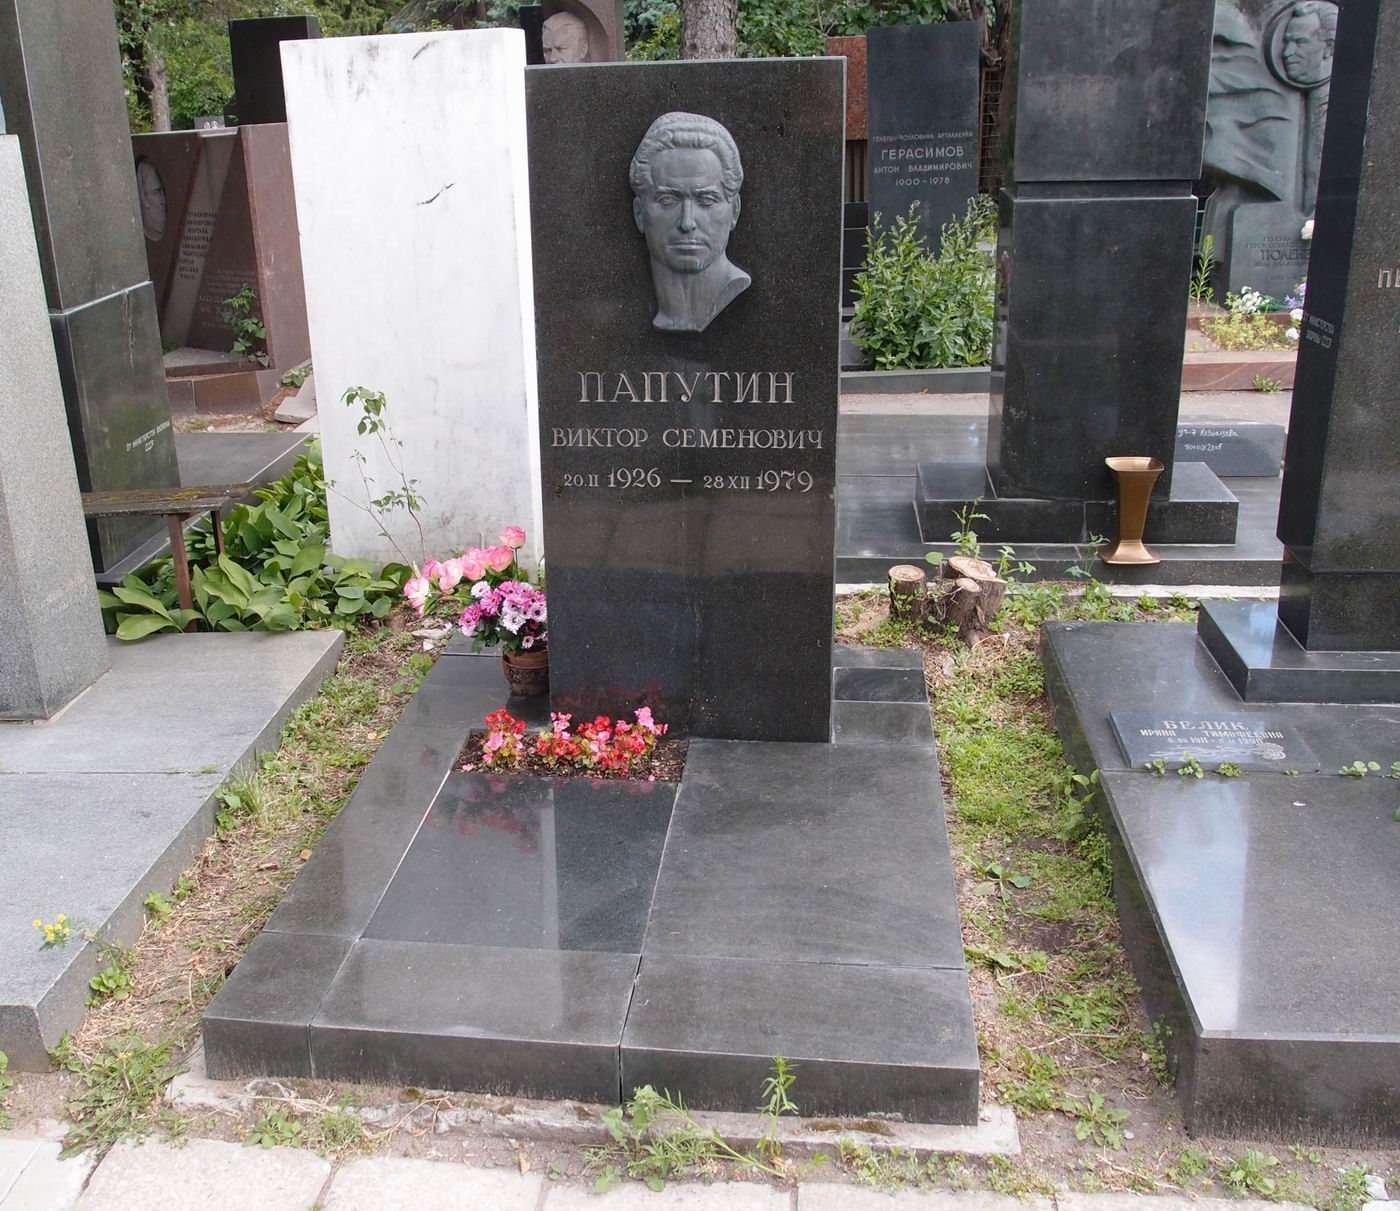 Памятник на могиле Папутина В.С. (1926–1979), ск. А.Бичуков, арх. А.Дугов, А.Любимов, Г.Петренко, на Новодевичьем кладбище (7–16–16).